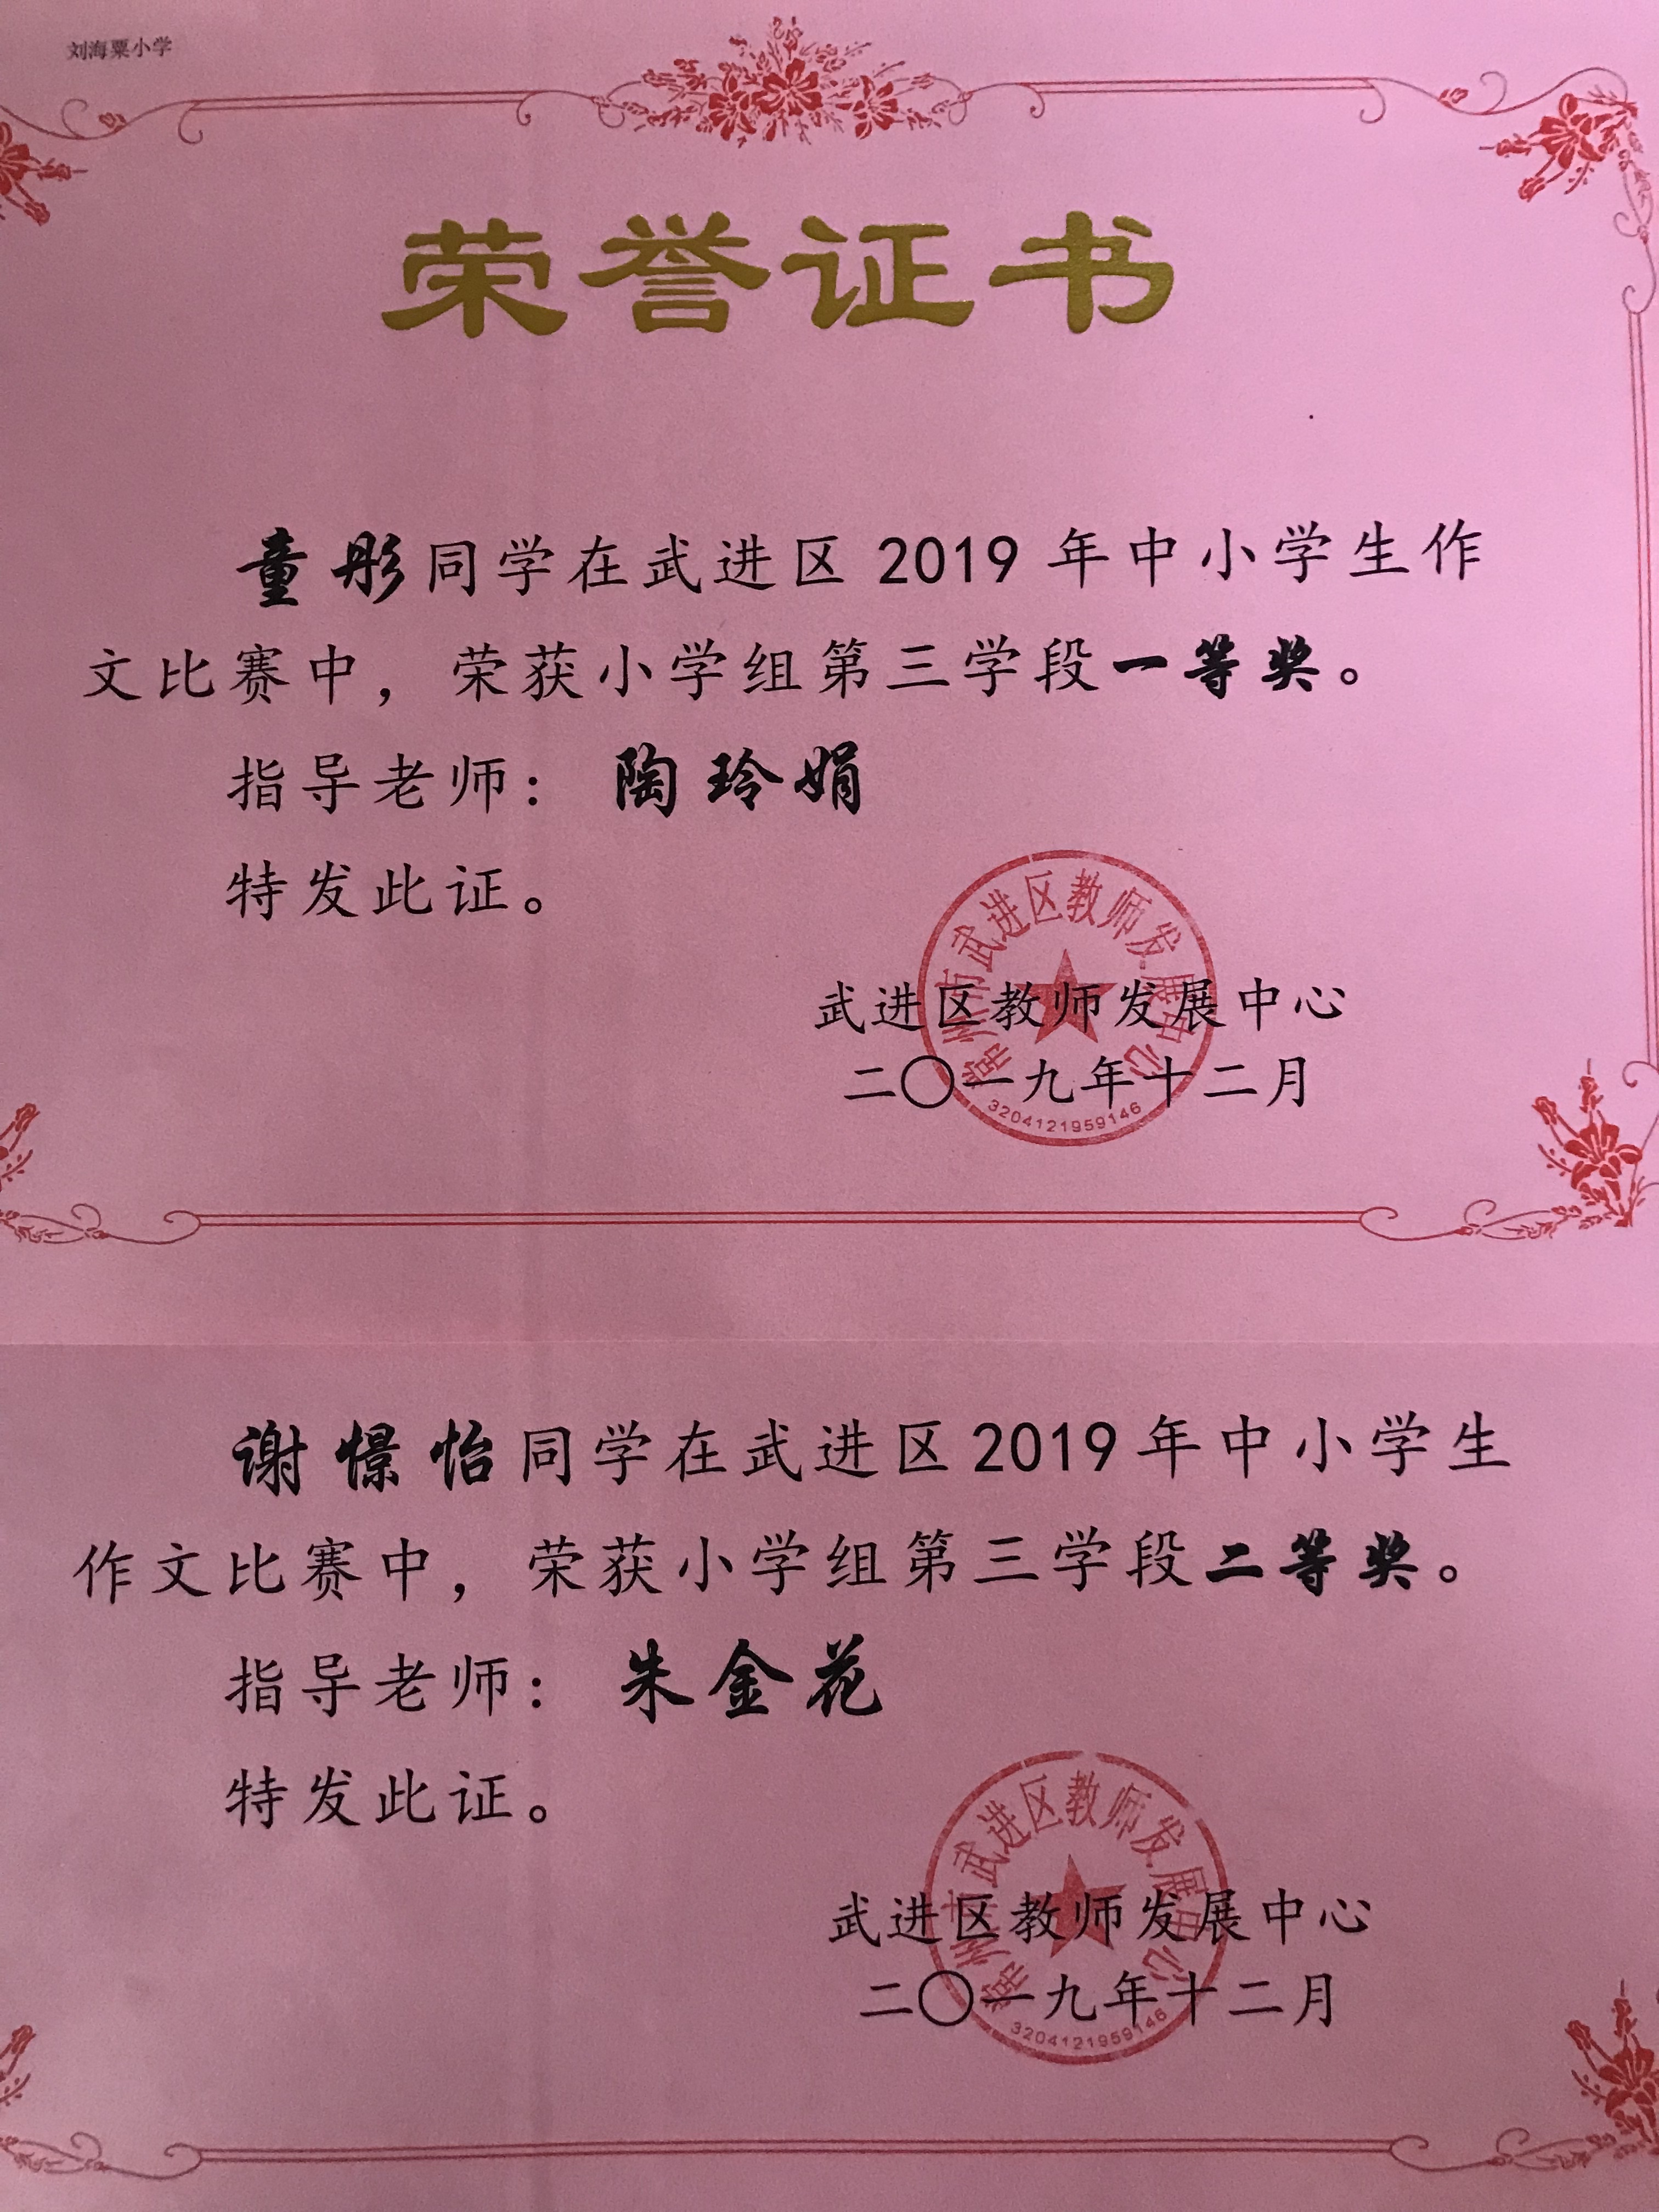 童彤、谢憬怡两位同学分获区2019年中小学生作文竞赛一、二等奖.jpg